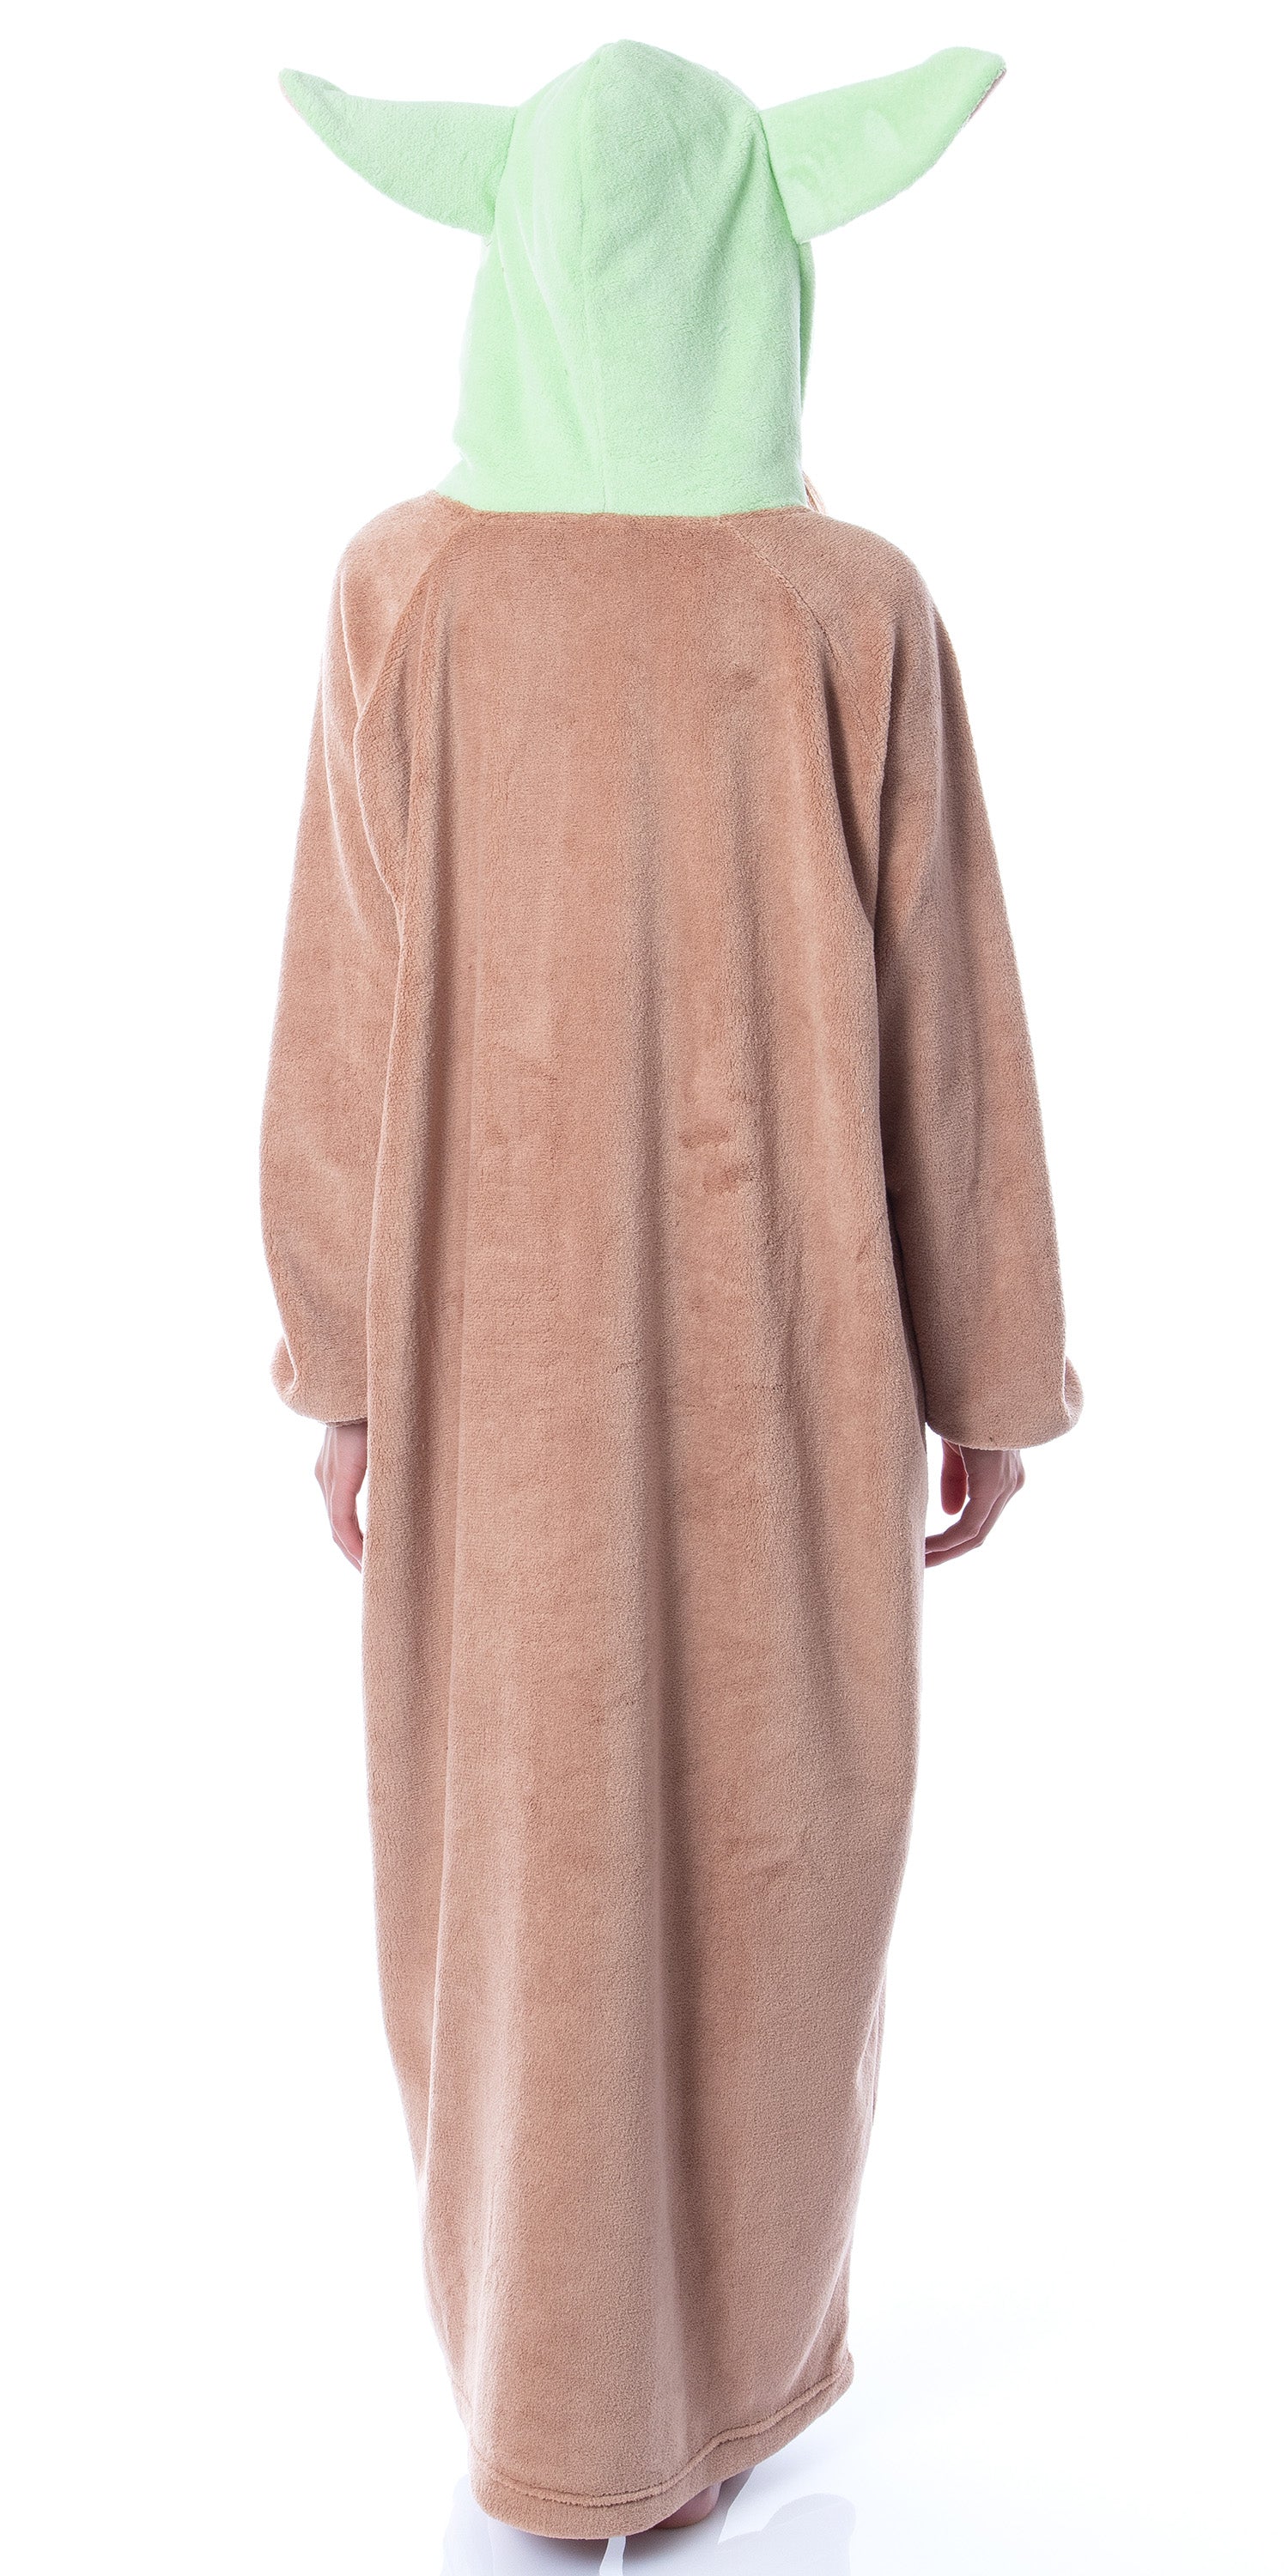 Men's Bathrobe Hooded Fleece Jedi Knig Cloak Gown Robe Star Wars Sleepwear  | eBay